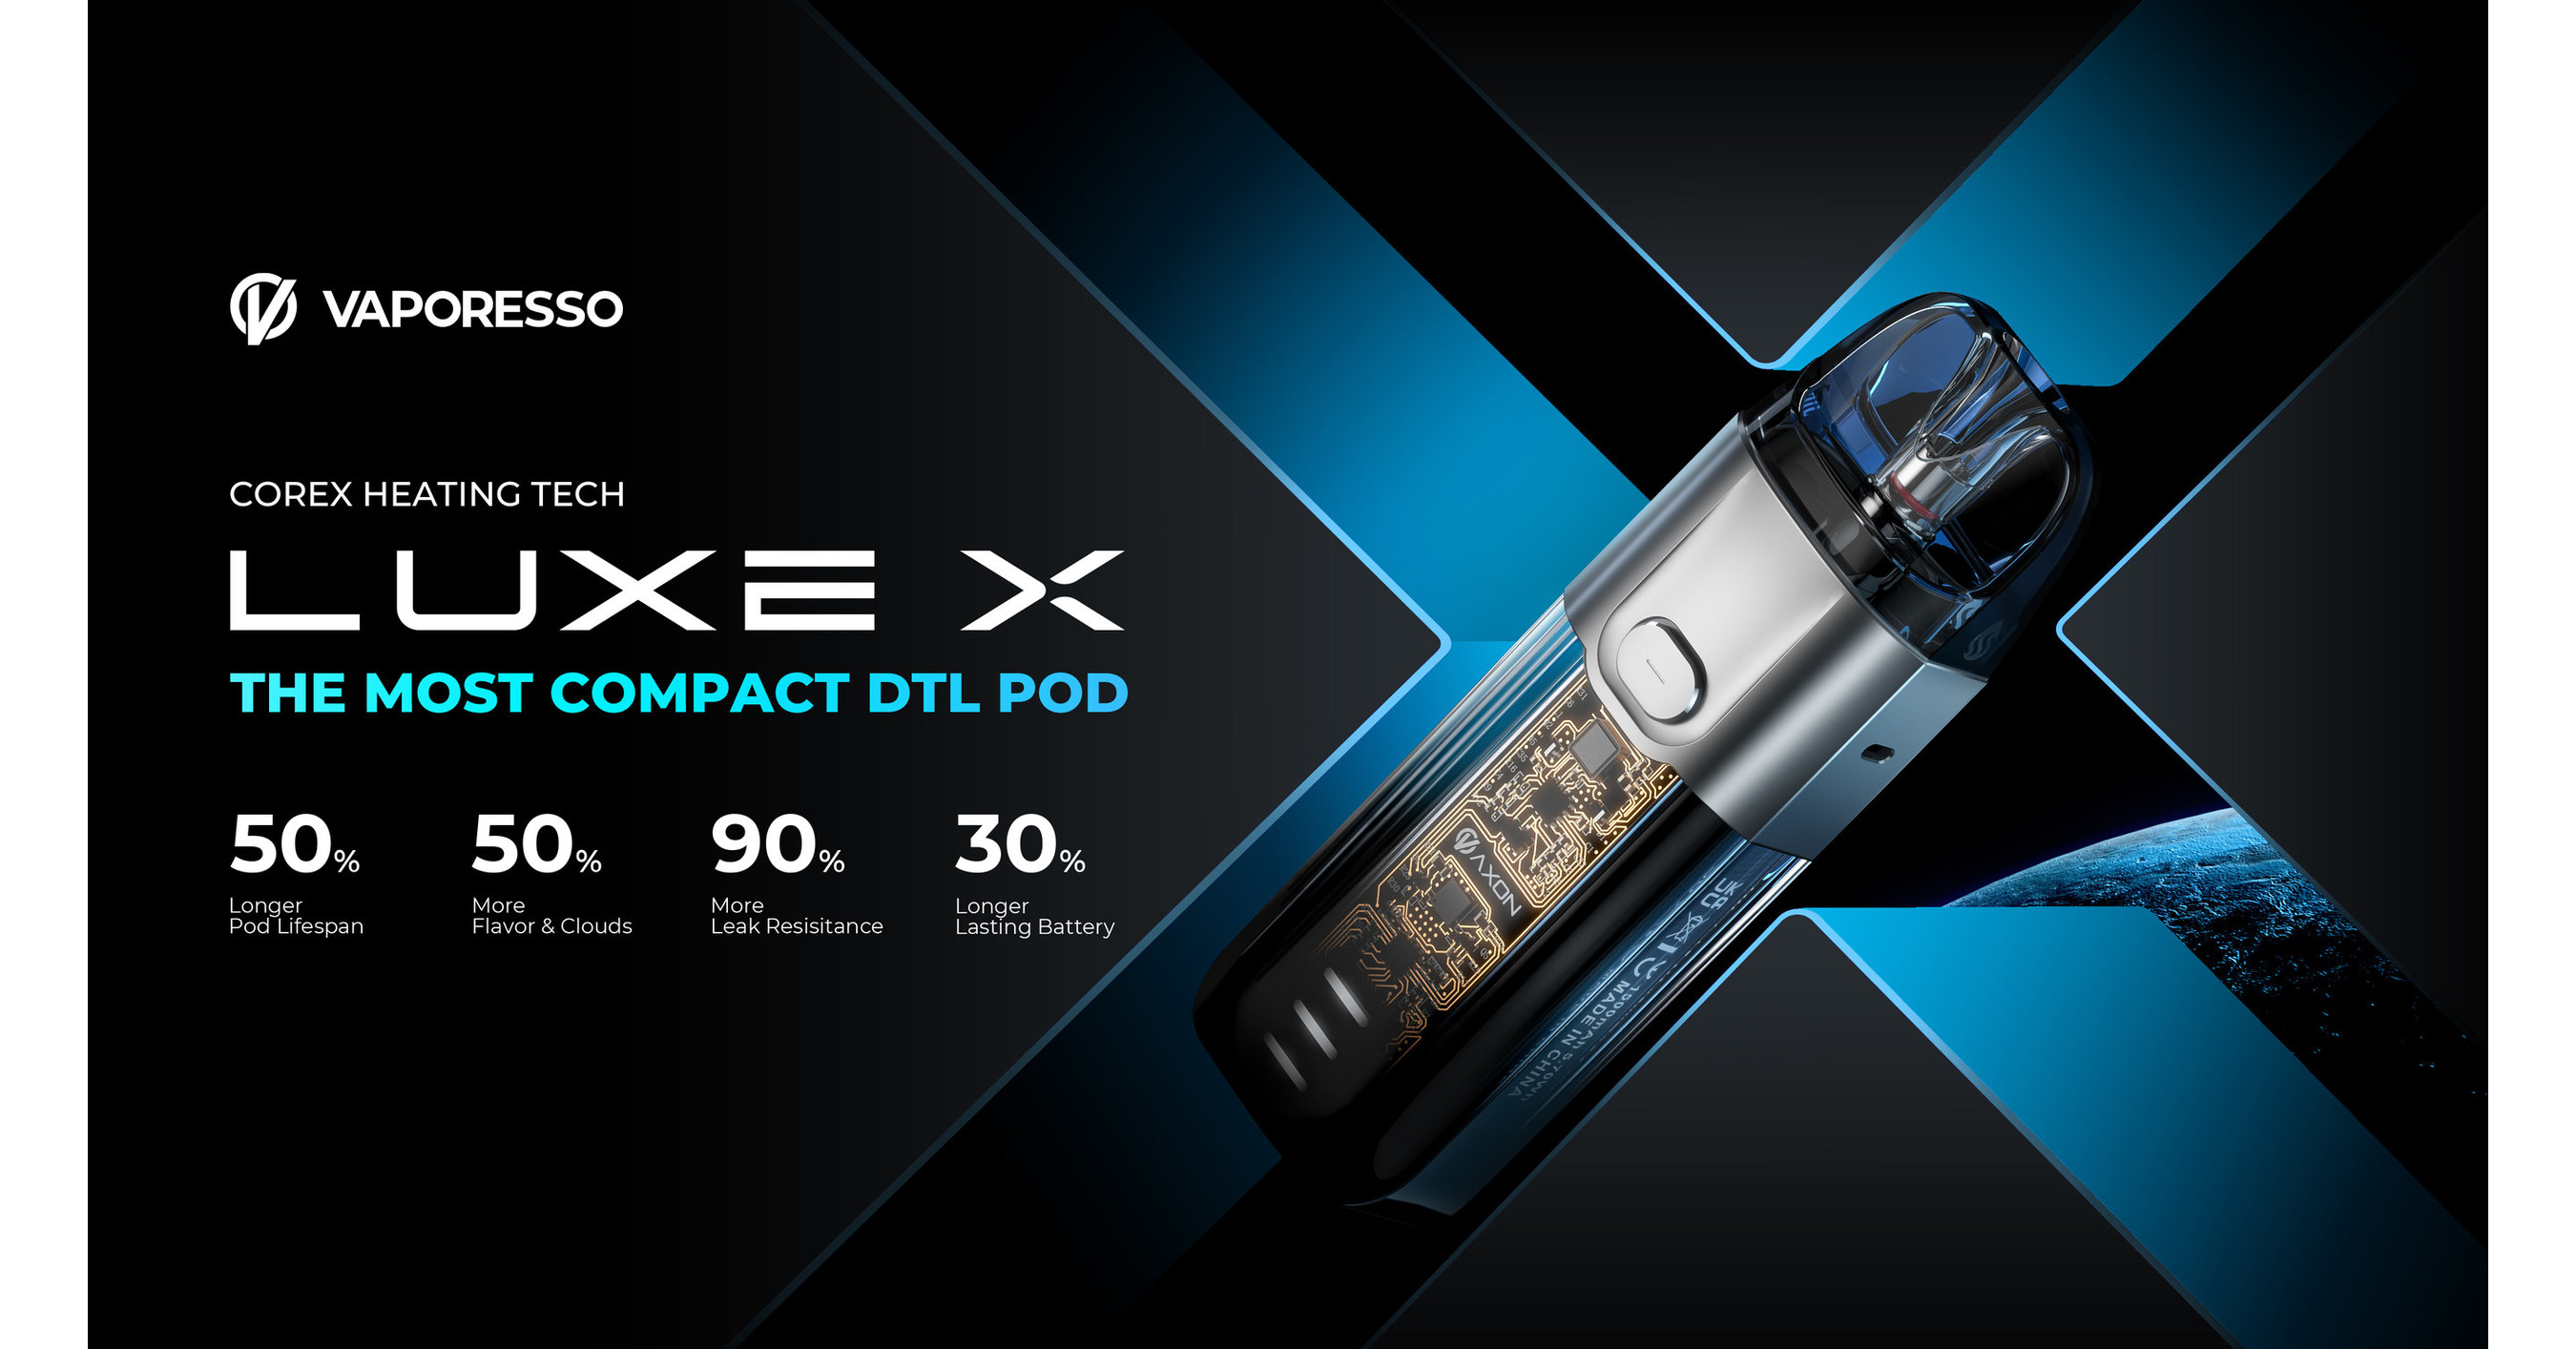 VAPORESSO dévoile le LUXE X au Royaume-Uni et en France, doté de sa dernière technologie de base COREX